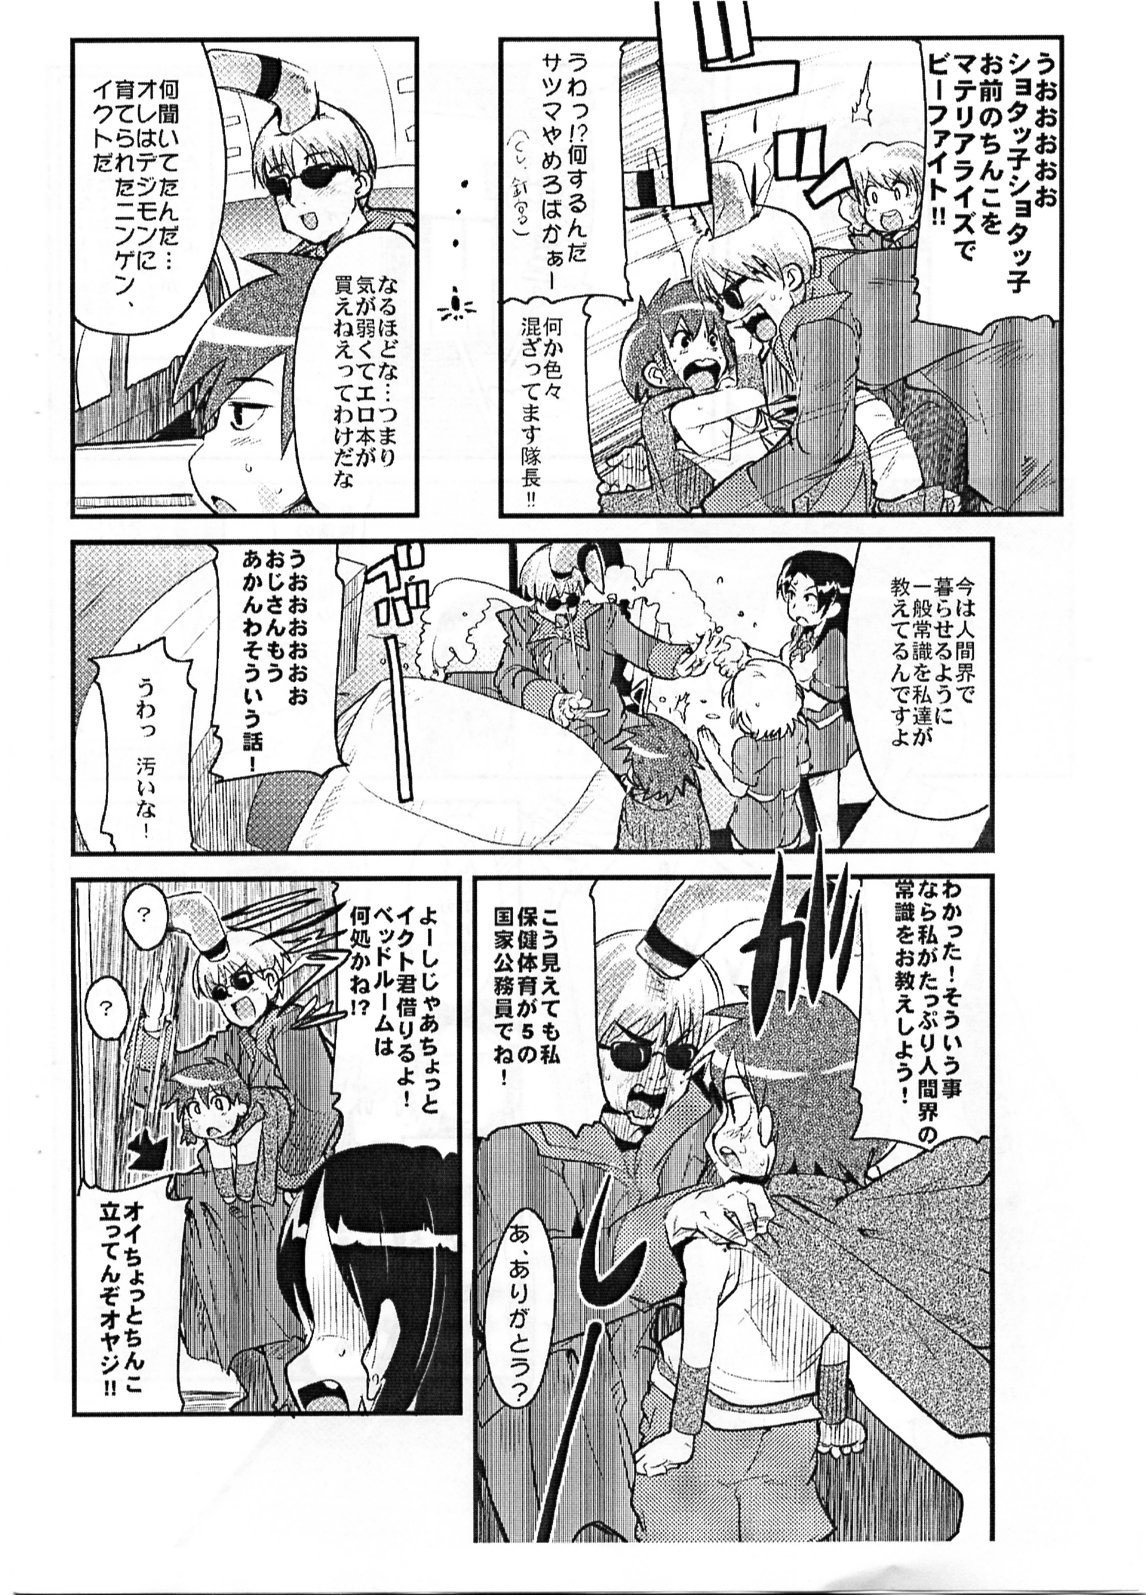 [Bronco Hitoritabi] Yaseiji ni iroiro oshieru hon nano da page 3 full